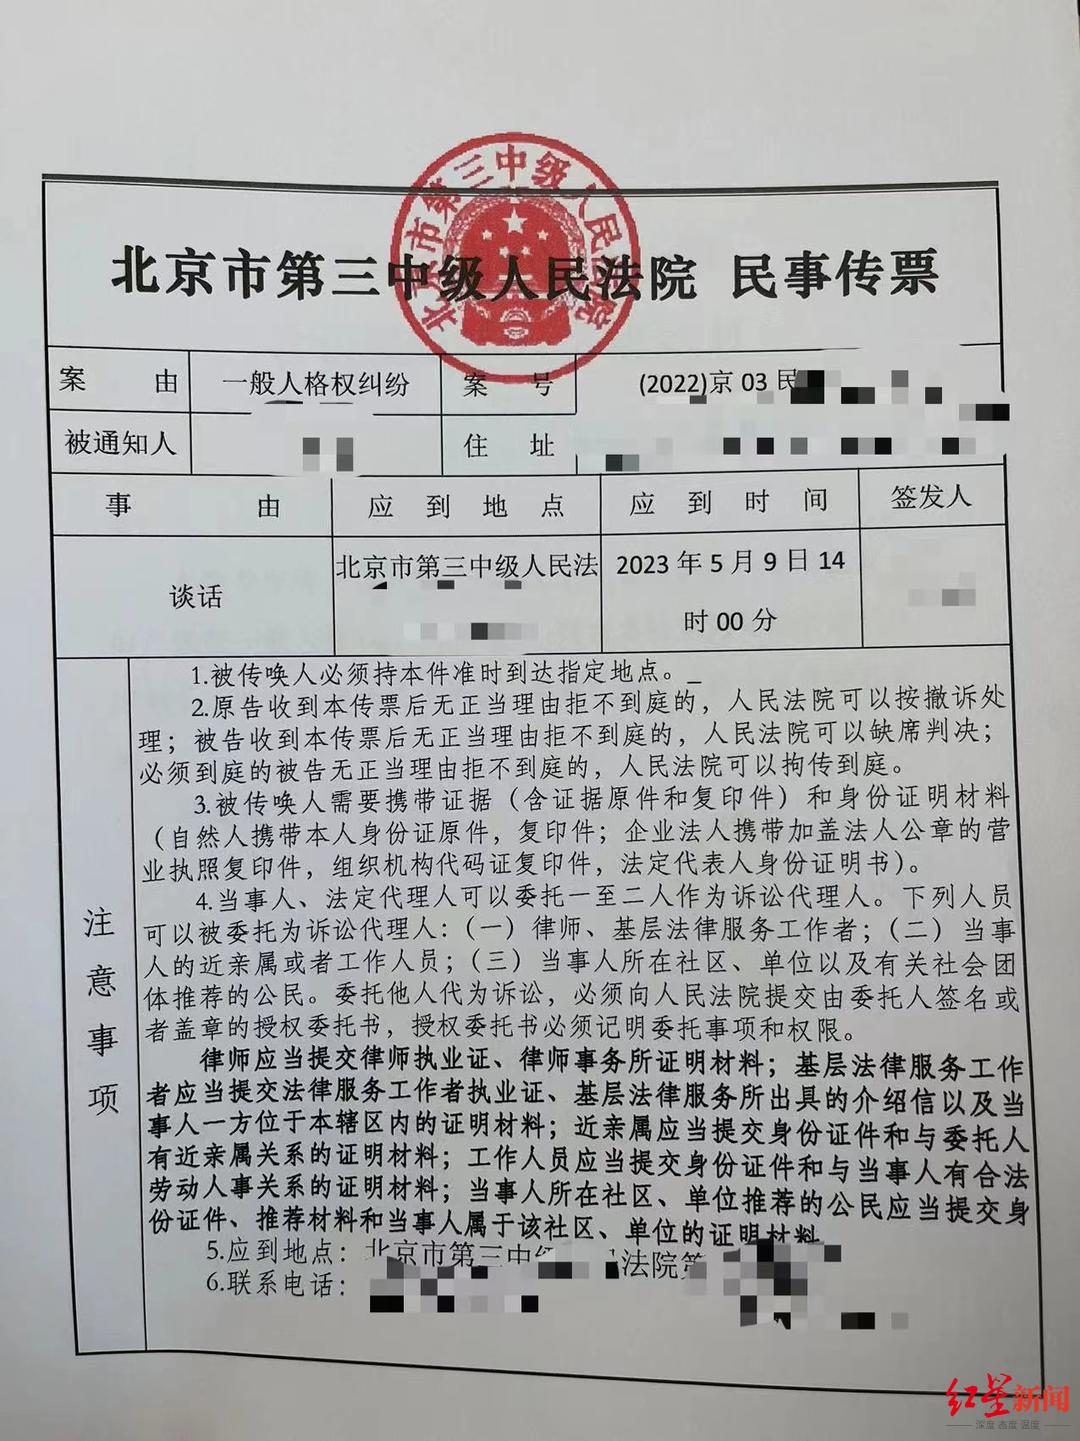 ↑北京市第三中级人民法院民事传票